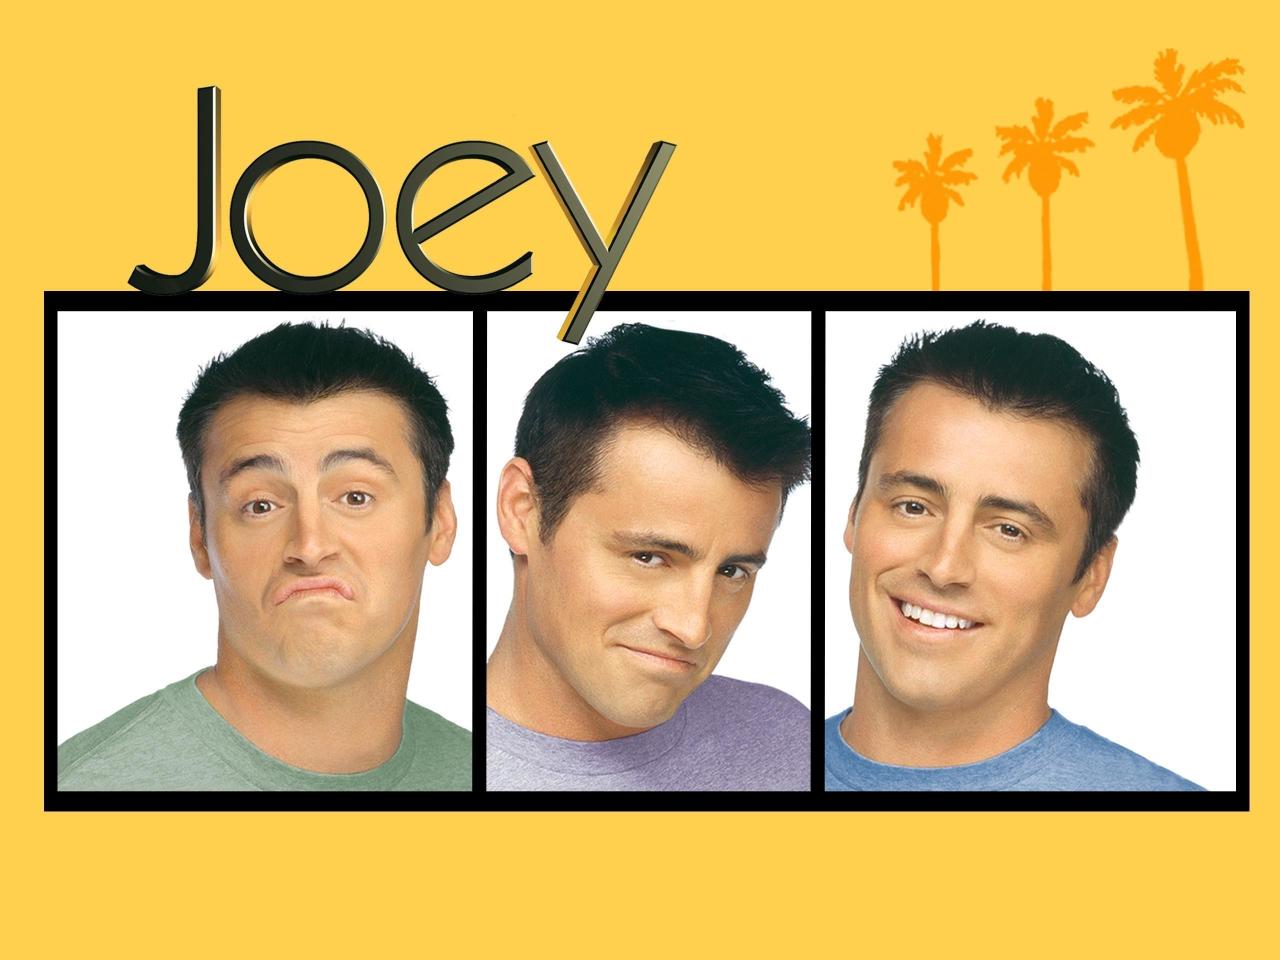 مسلسل Joey